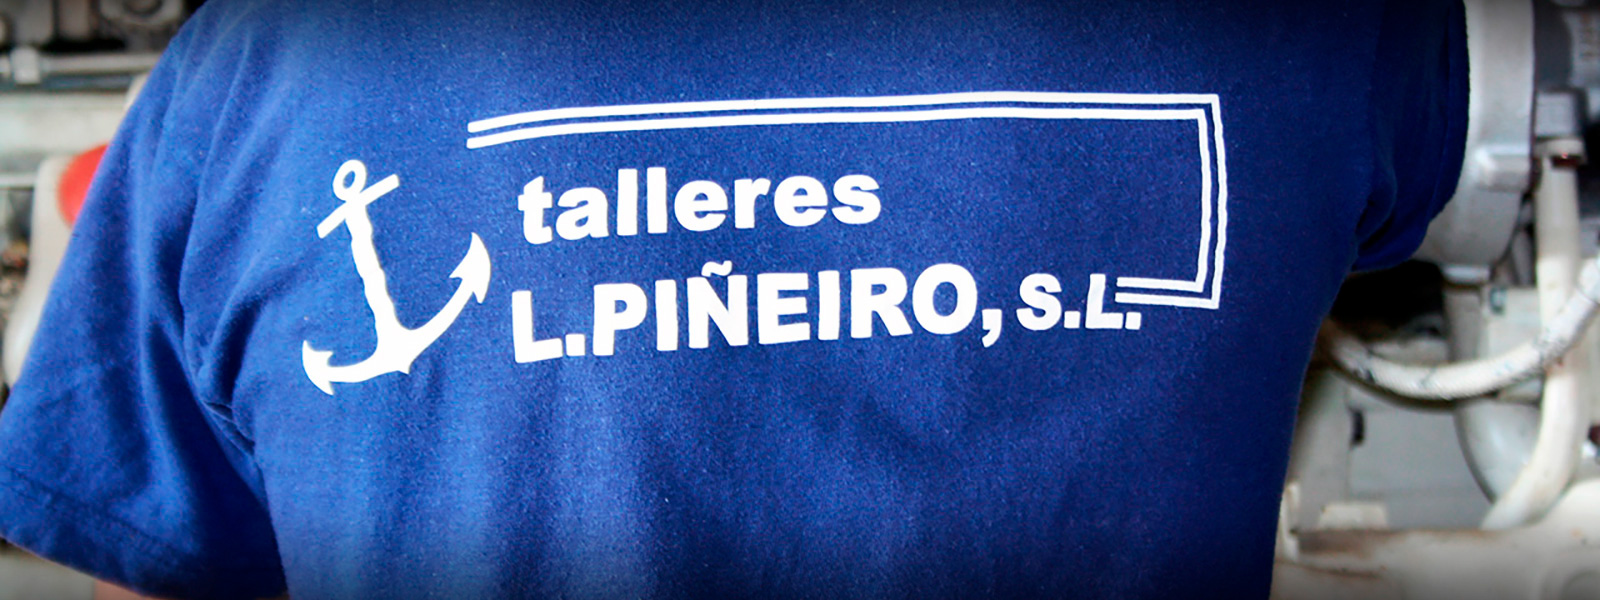 Talleres Luis Piñeiro, S.L.